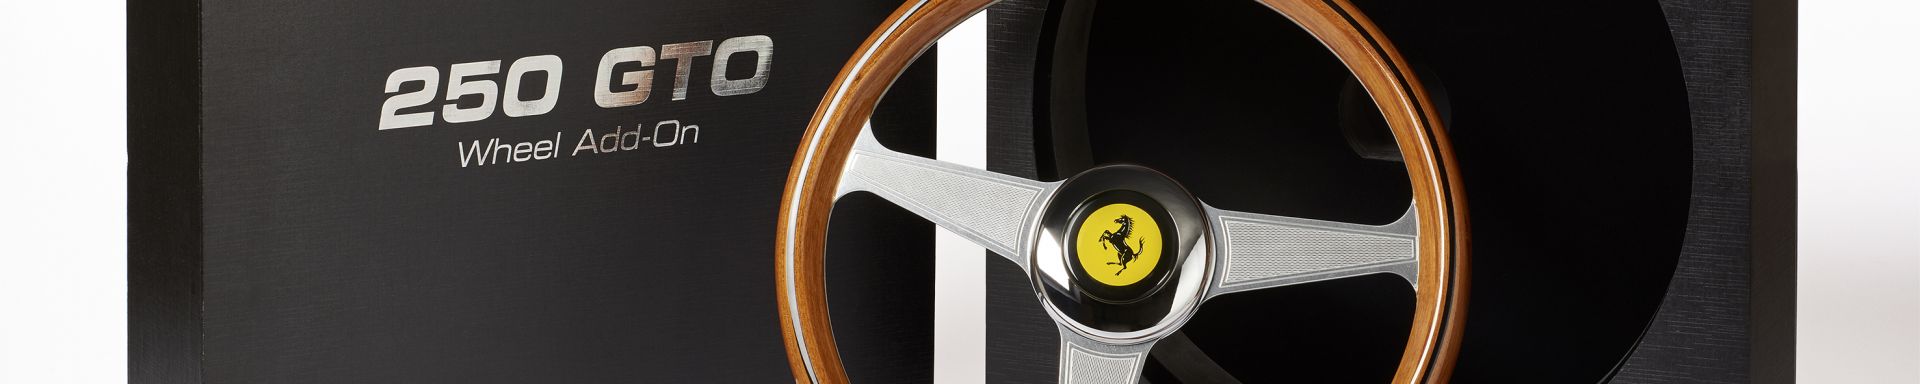 美しい UNOSHOTENー宇野商店Ferrari 250 GTO Wheel Add On 並行輸入